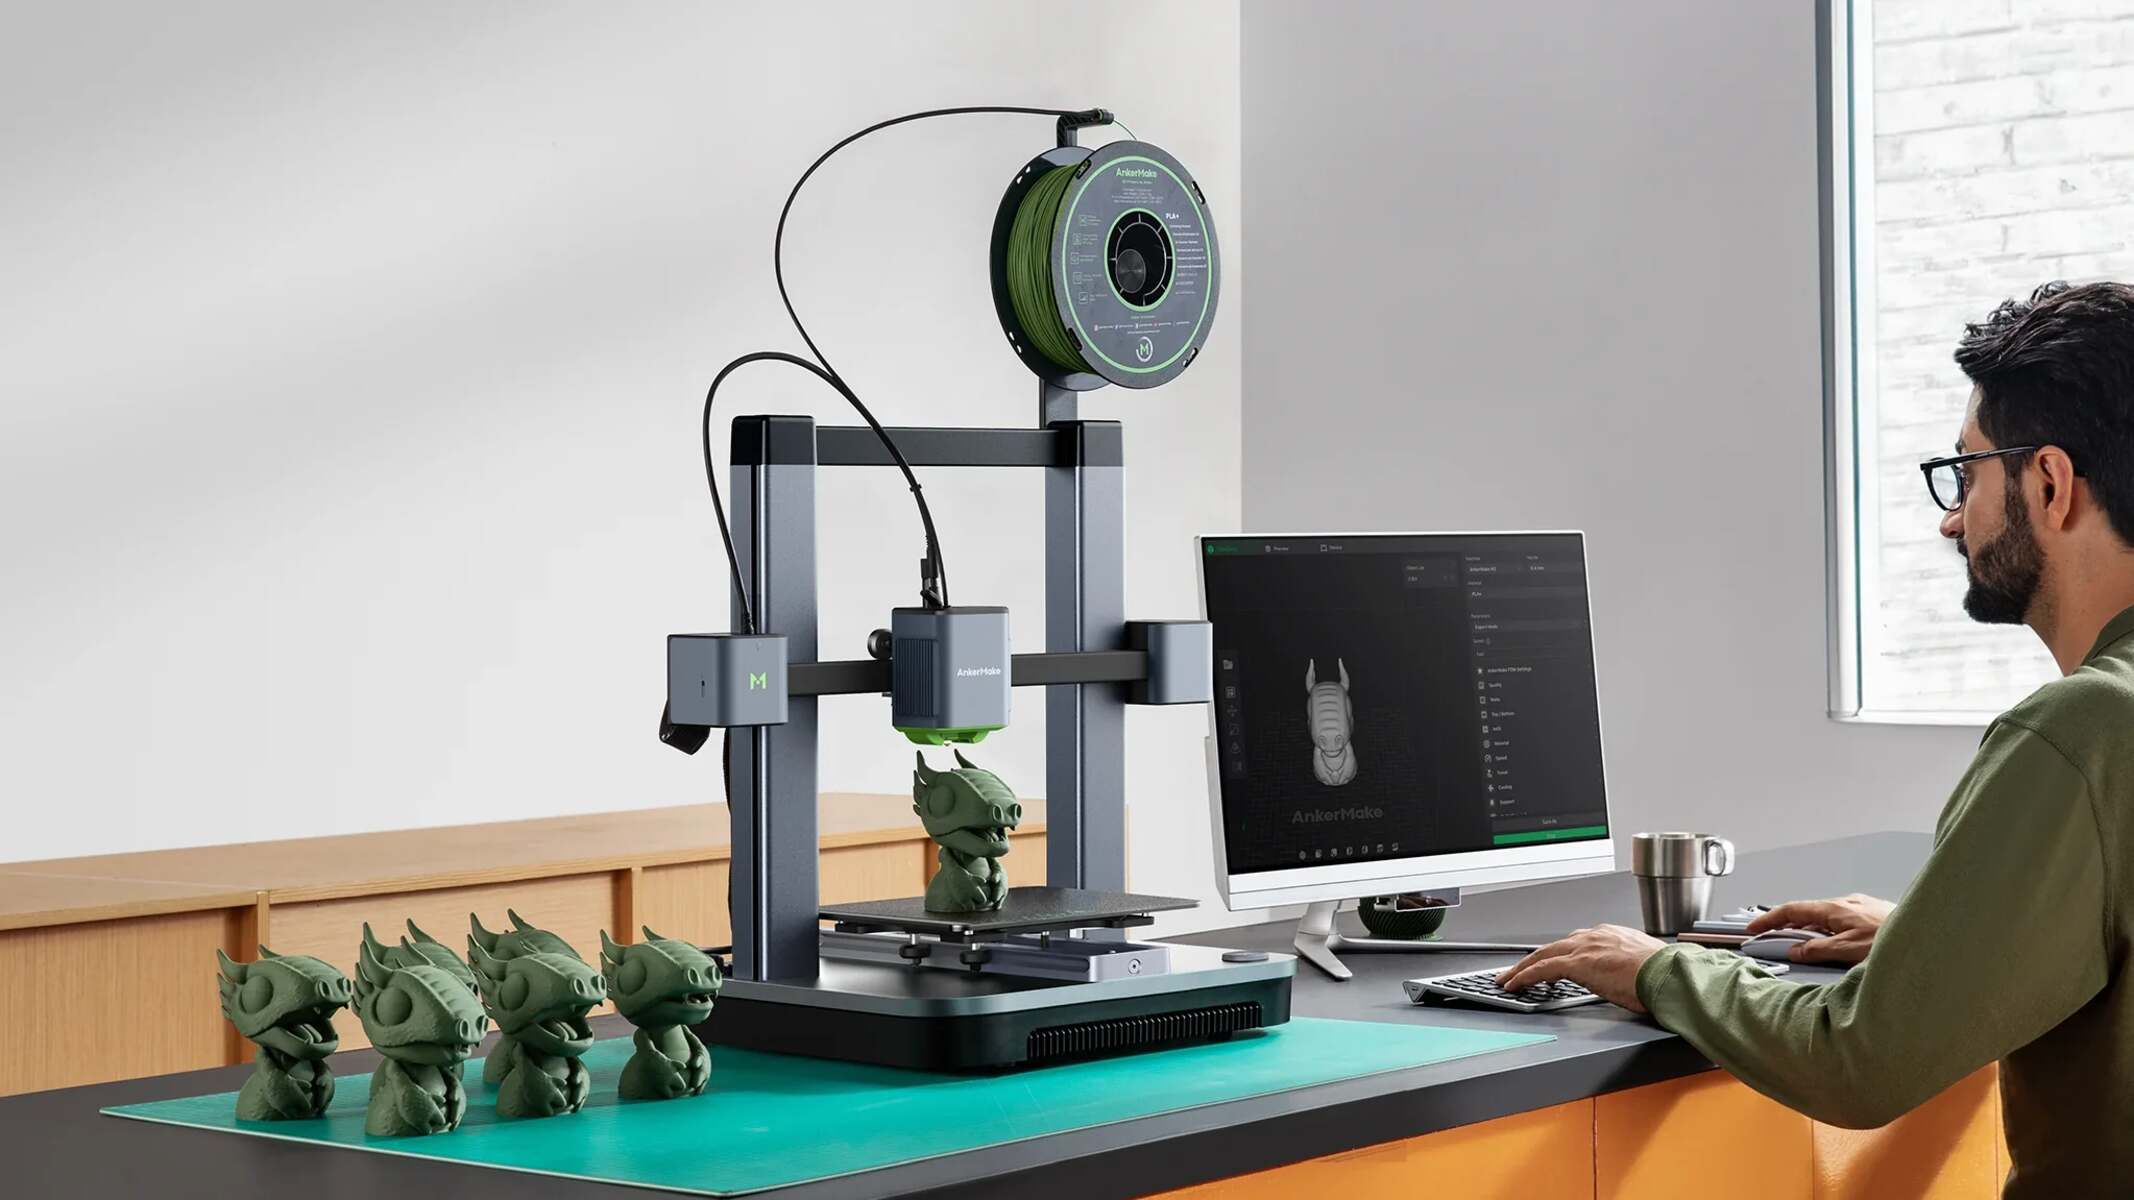 How Do You Make 3D Printer Files